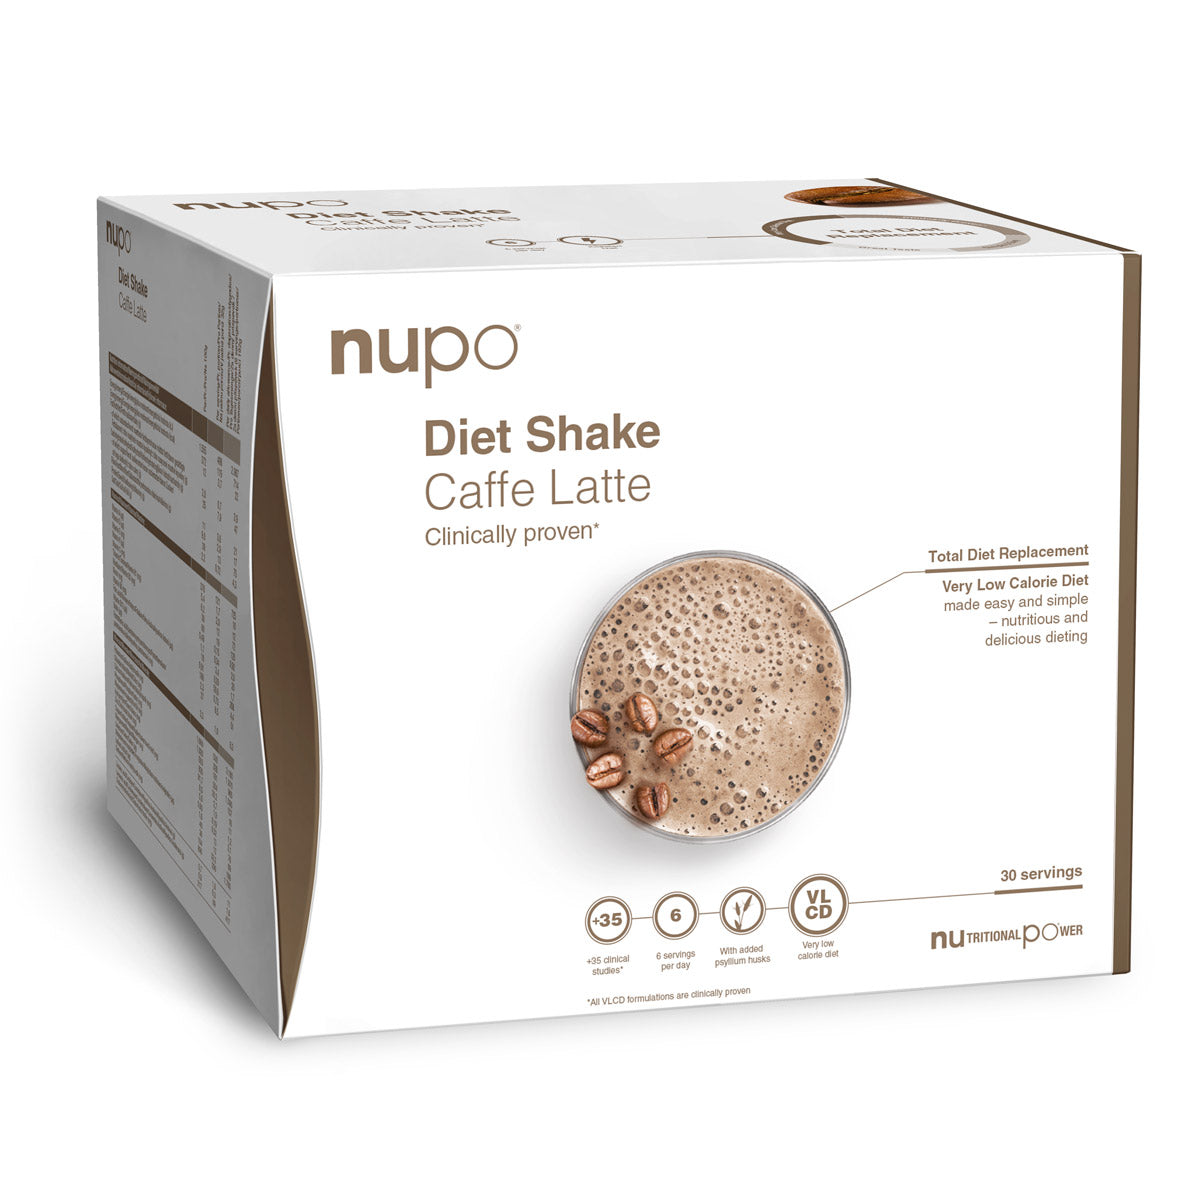 Brug Nupo Diet Shake Value Pack (960g) - Caffe Latte til en forbedret oplevelse